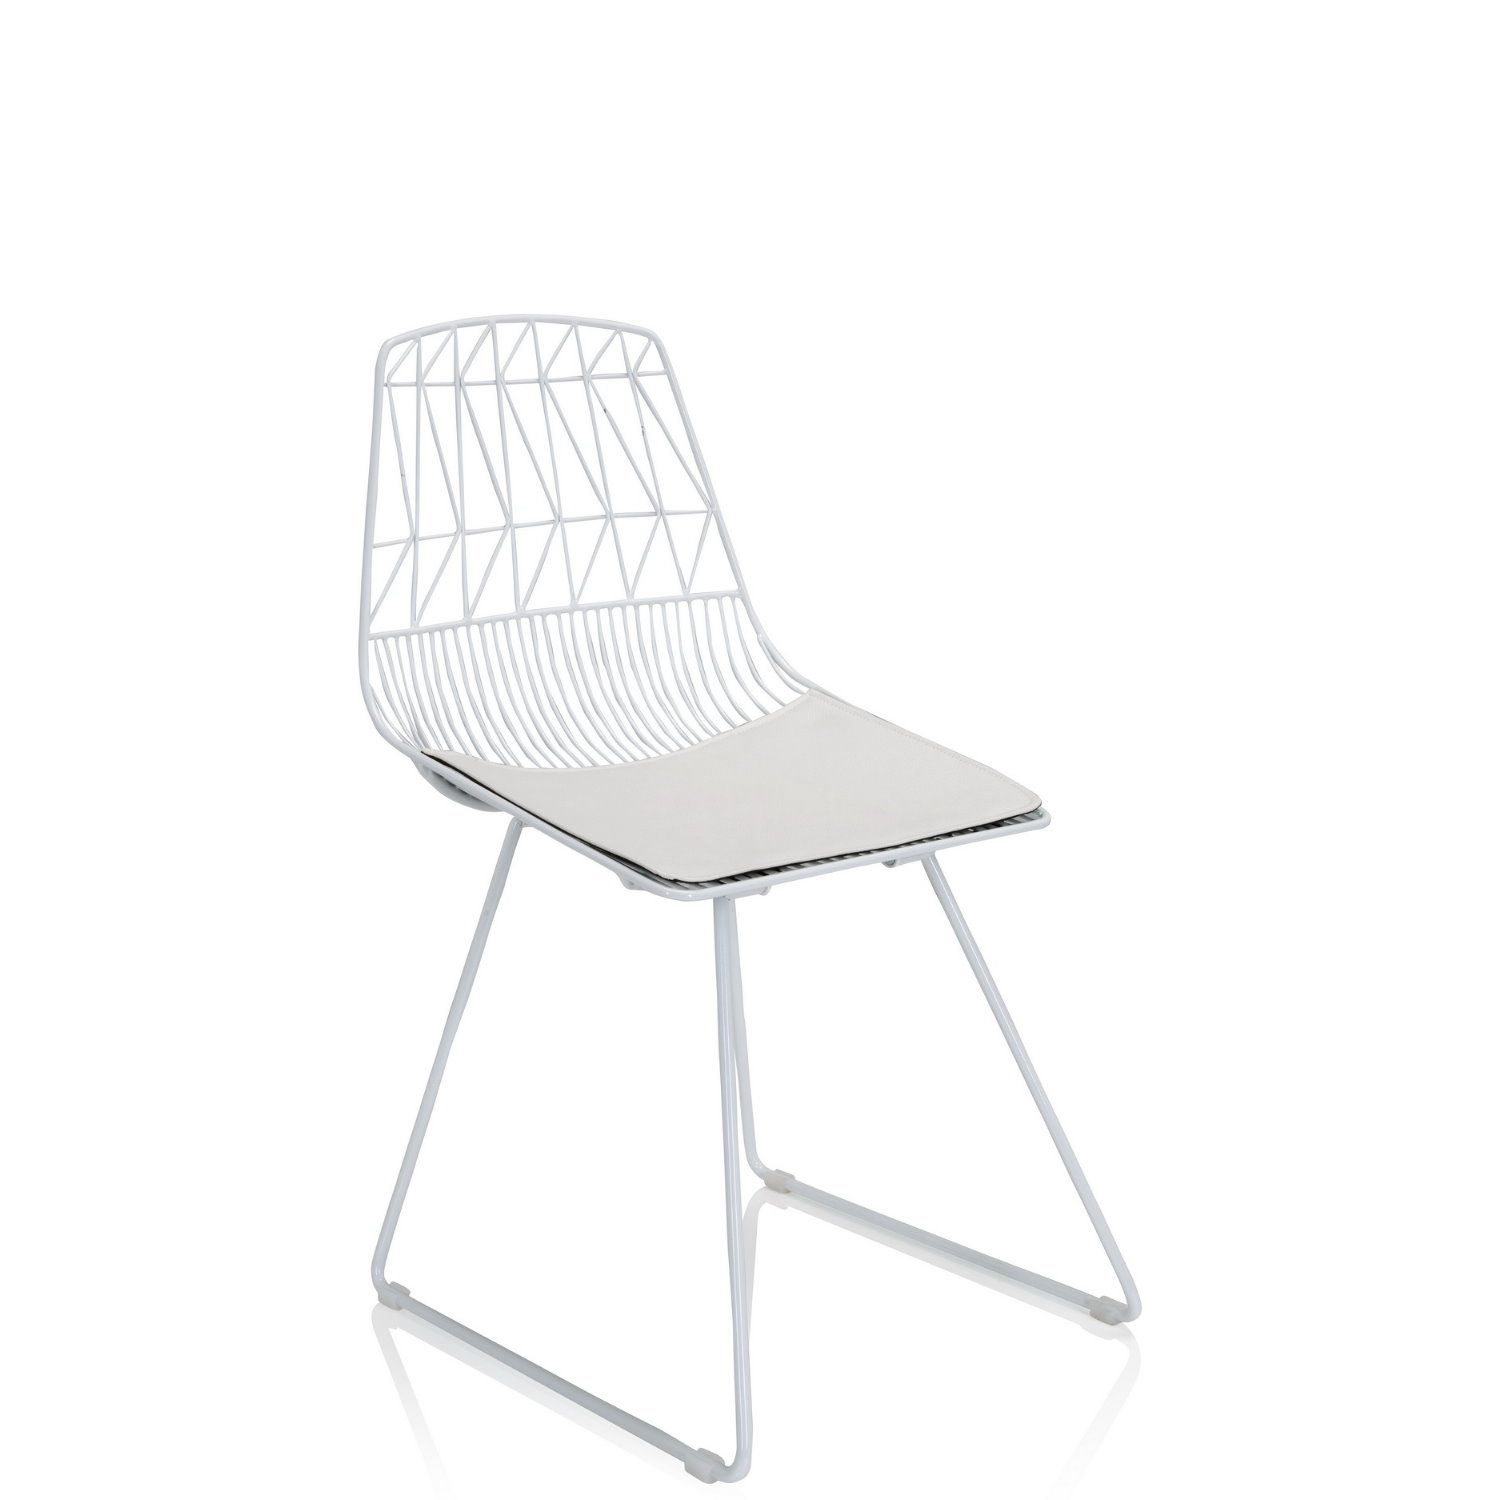 Metall-Stuhl / Living Stuhl WIREA mit Sitzkissen schwarz hjh OFFICE